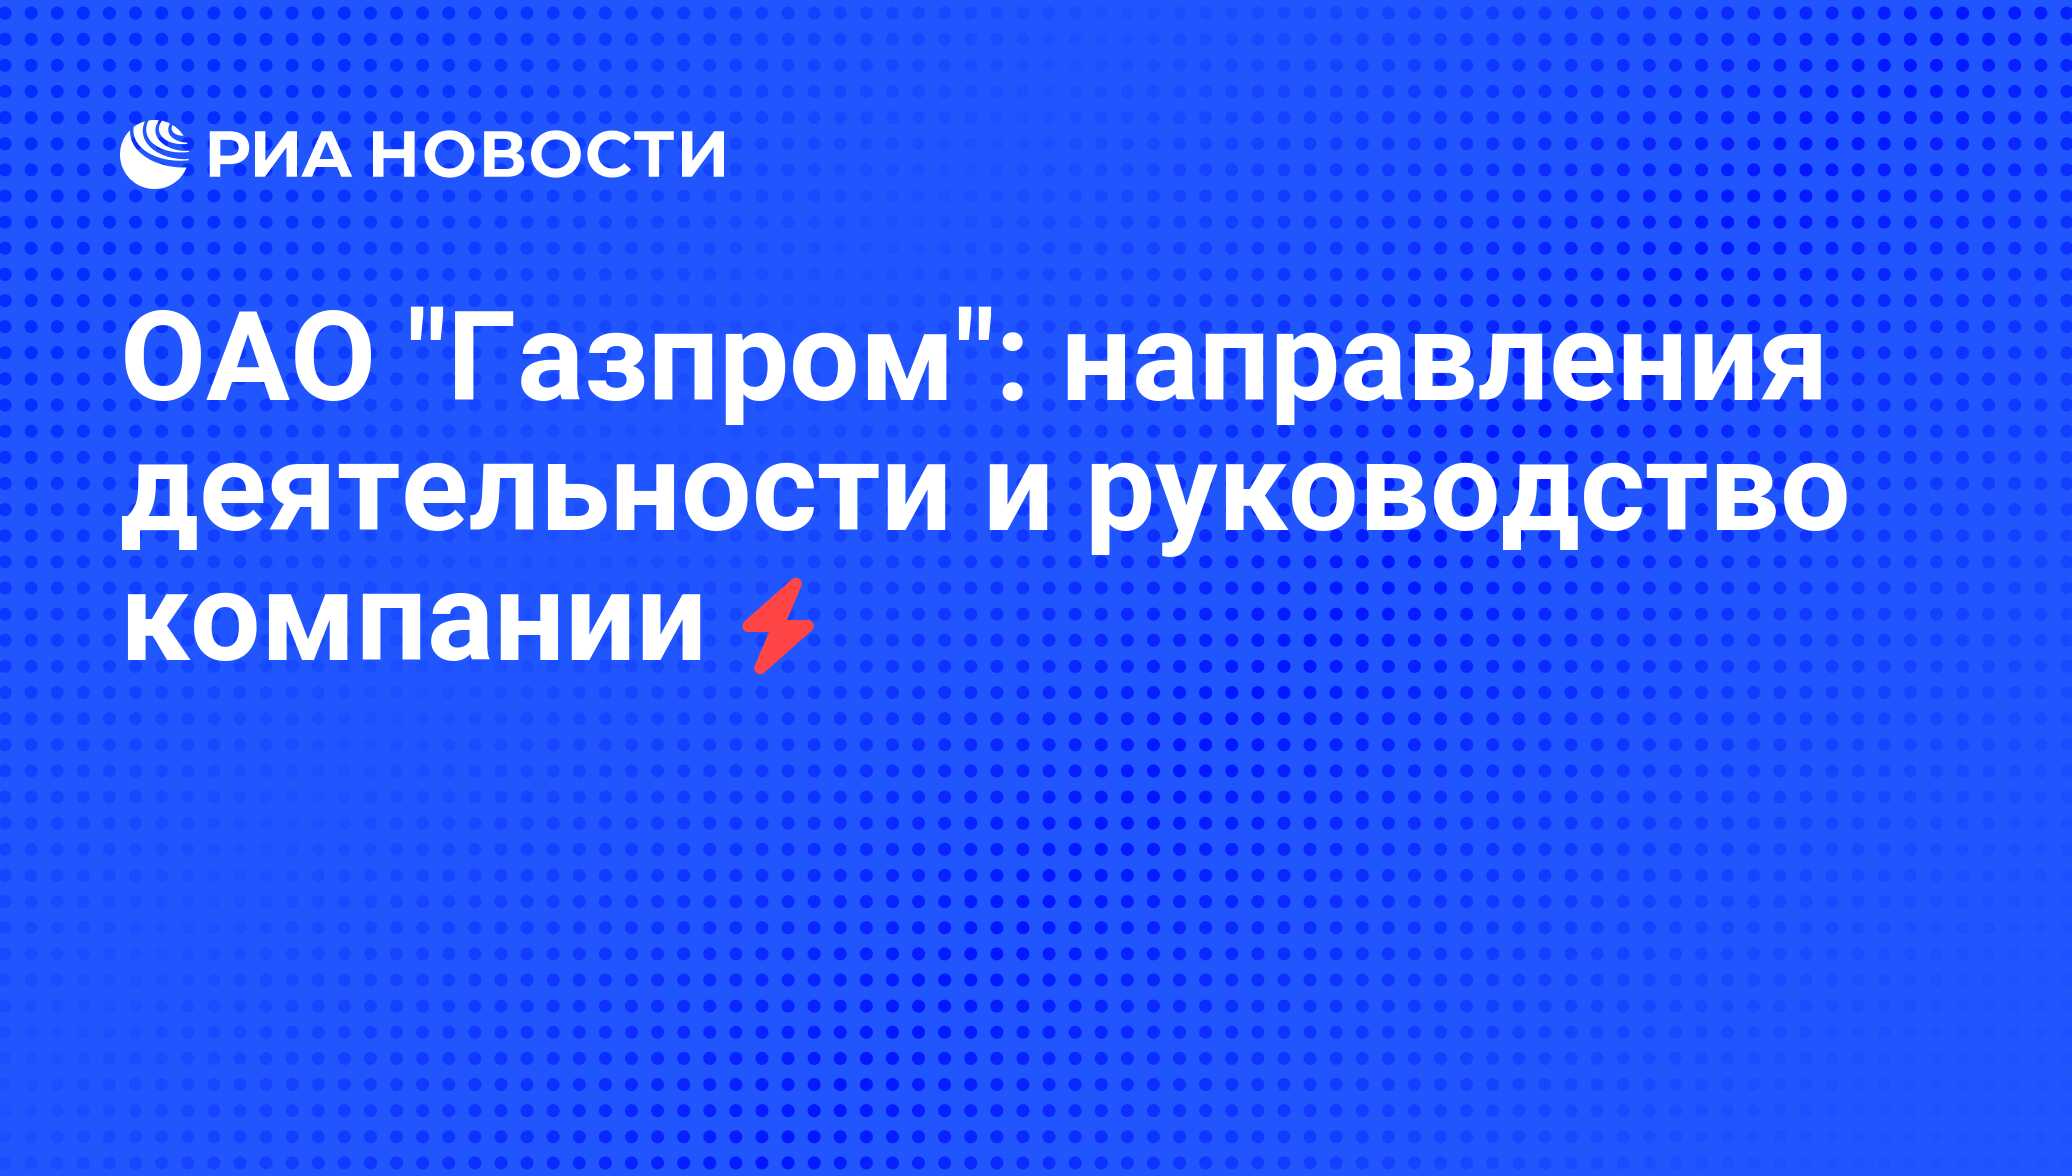 Руководство Газпрома Фамилии Фото